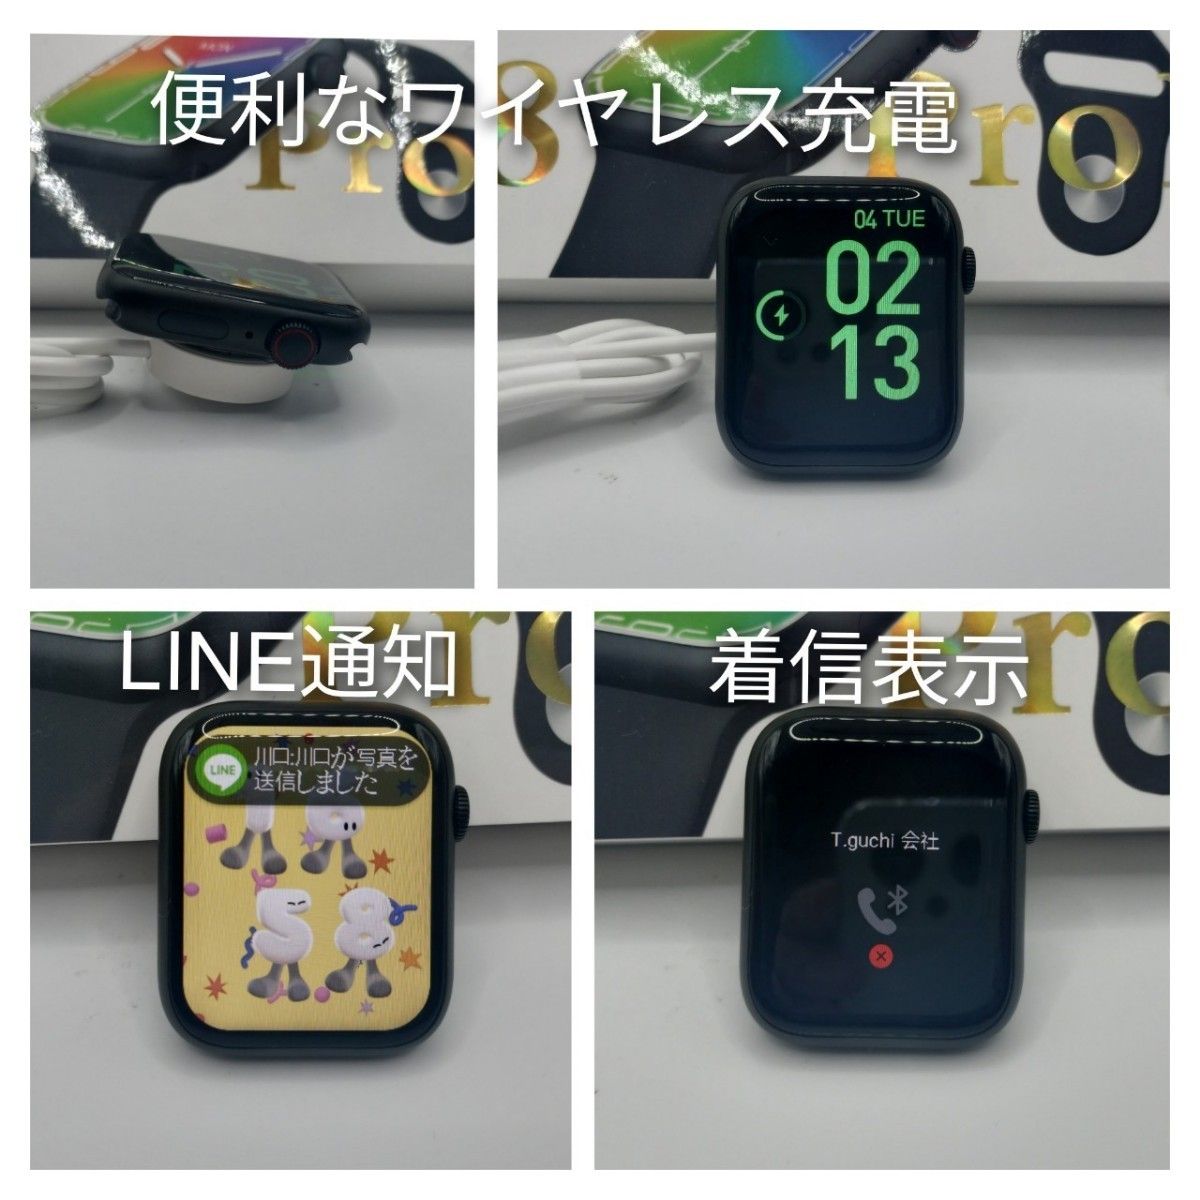 【SET】ワイヤレスイヤホン(ホワイト)＆スマートウォッチ(グリーン)GS8 pro max 日本語対応 ワイヤレス充電